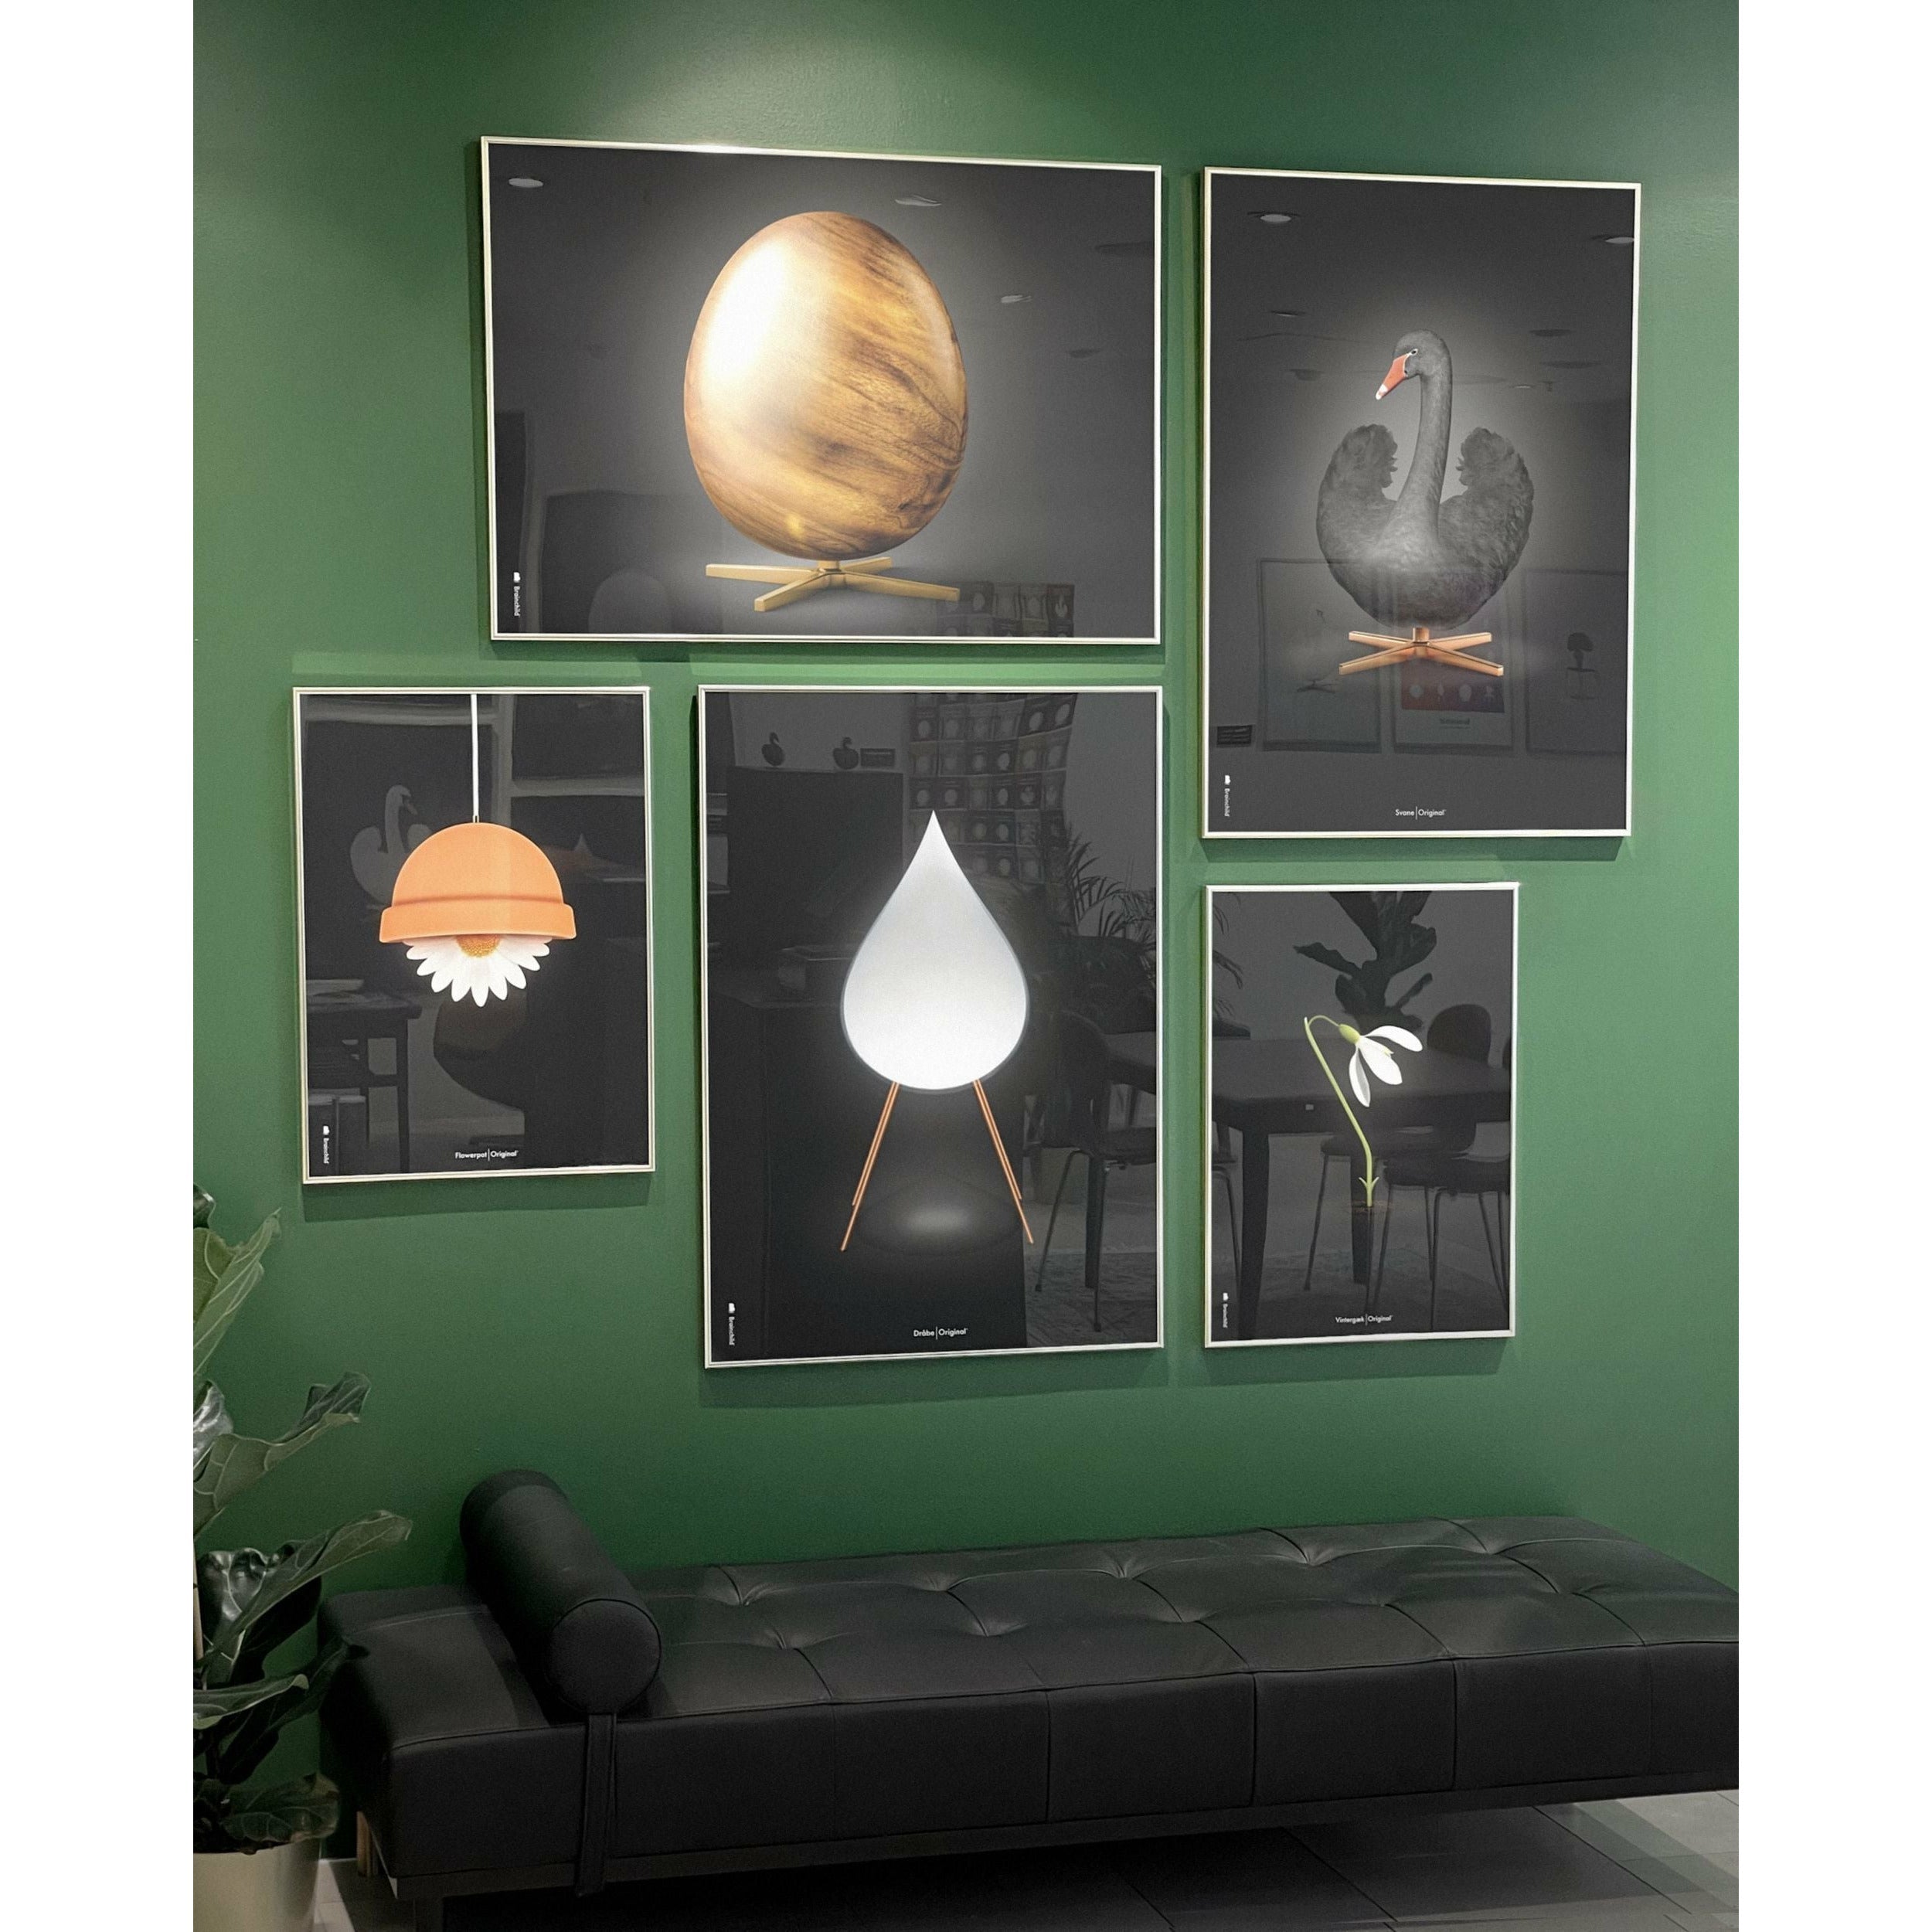 brainchild Eierkruisformaat Poster, frame in zwart gelakt hout 50x70 cm, zwart